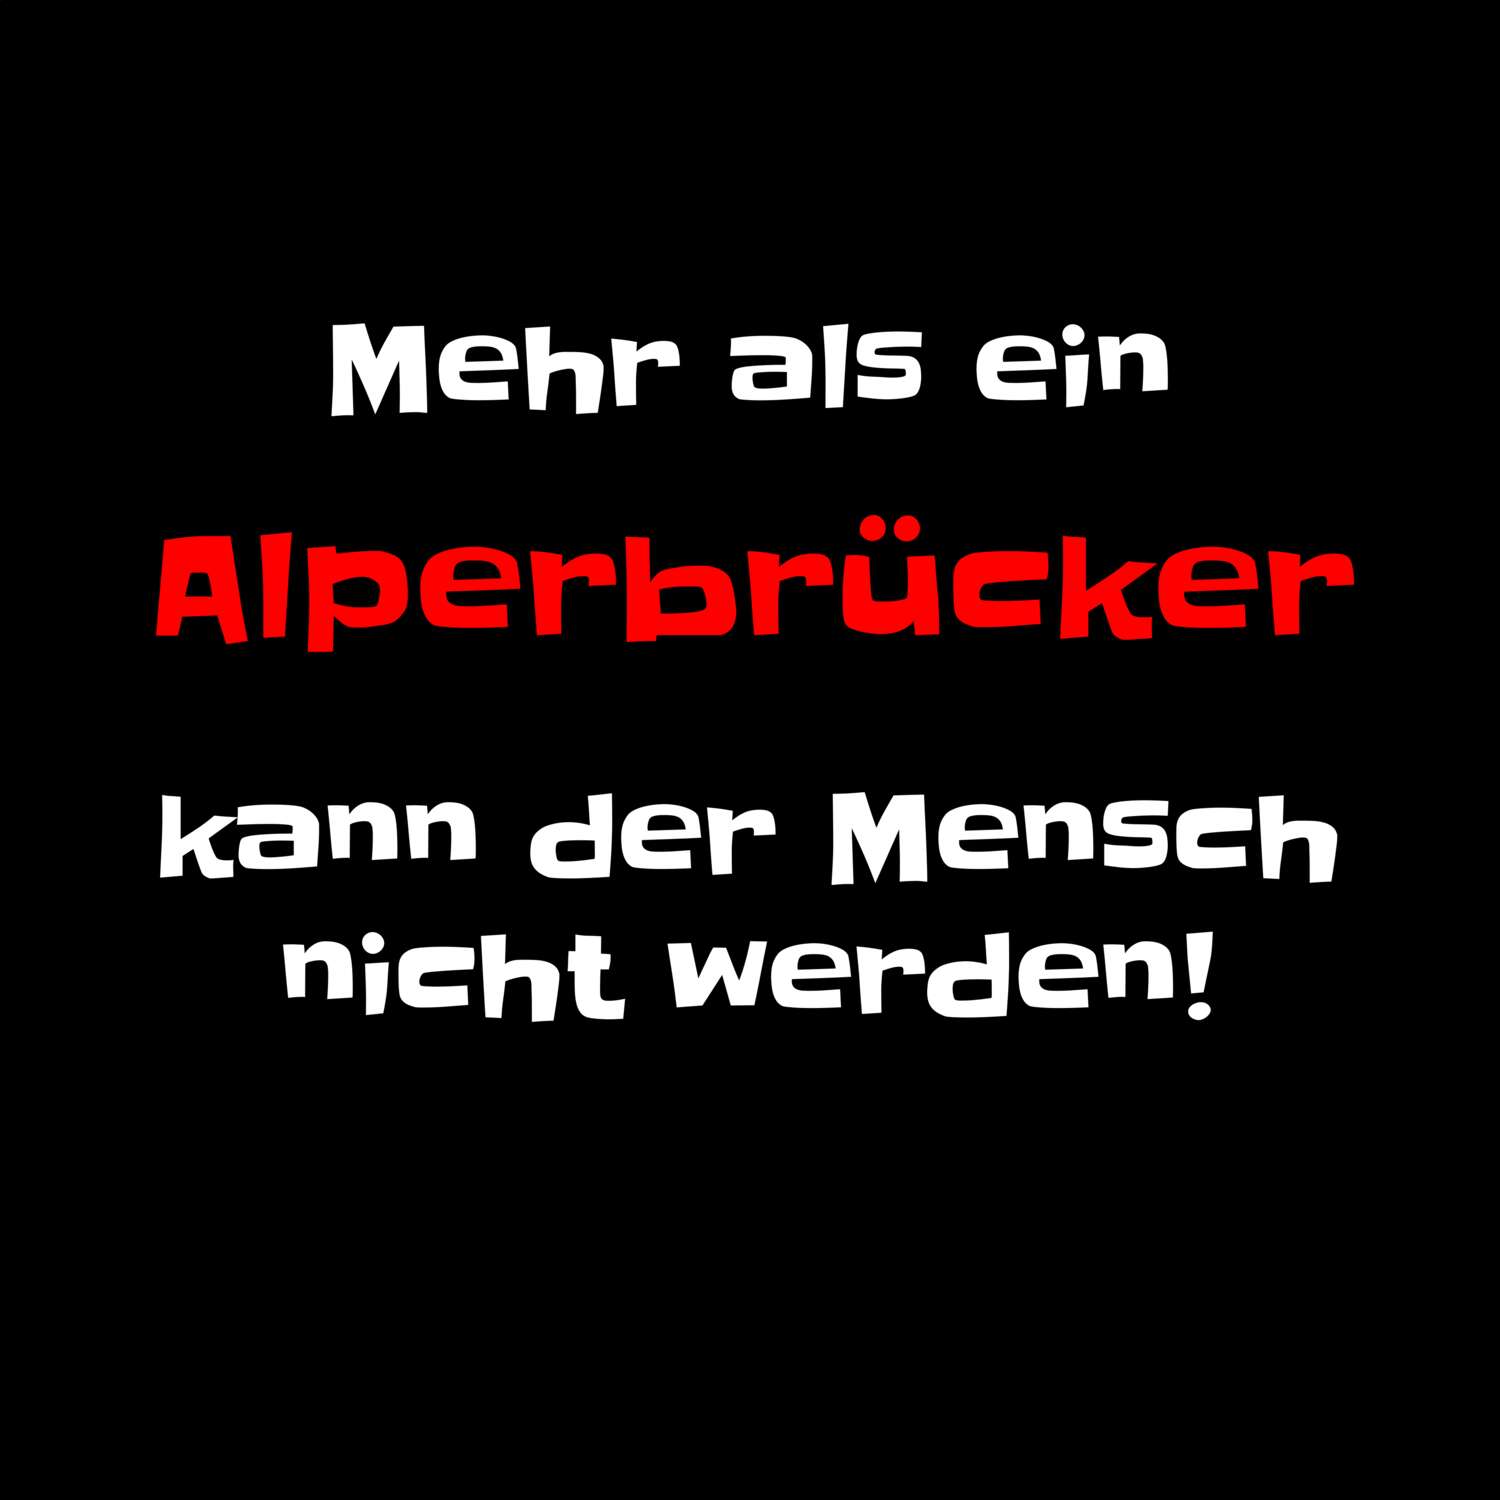 Alperbrück T-Shirt »Mehr als ein«